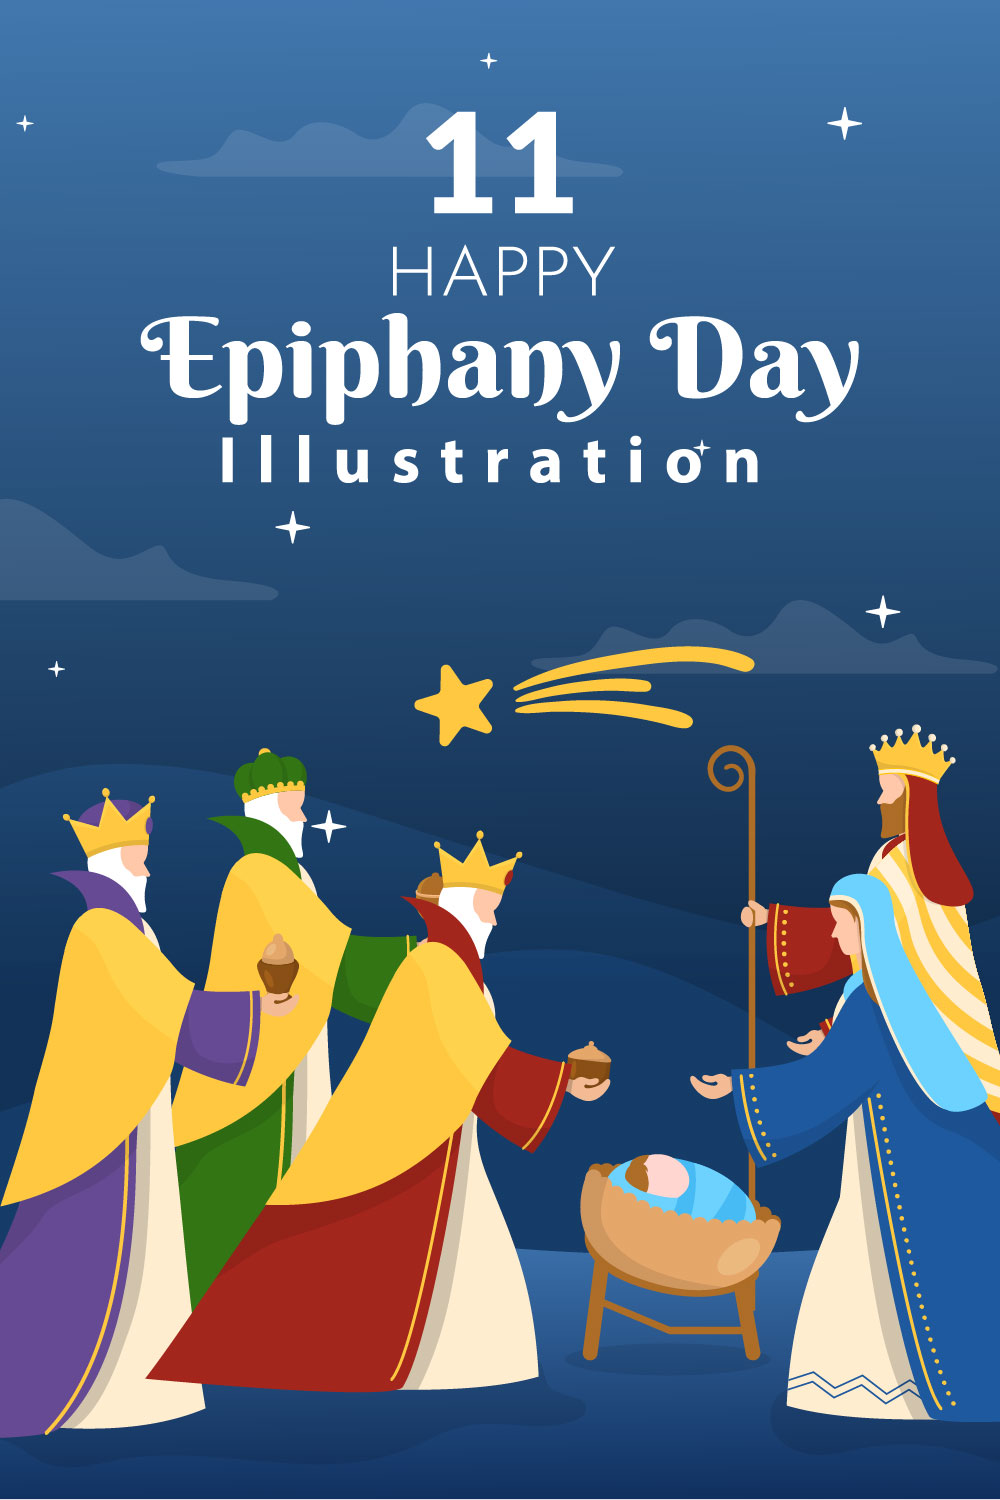 11 Happy Epiphany Day Illustration pinterest image.